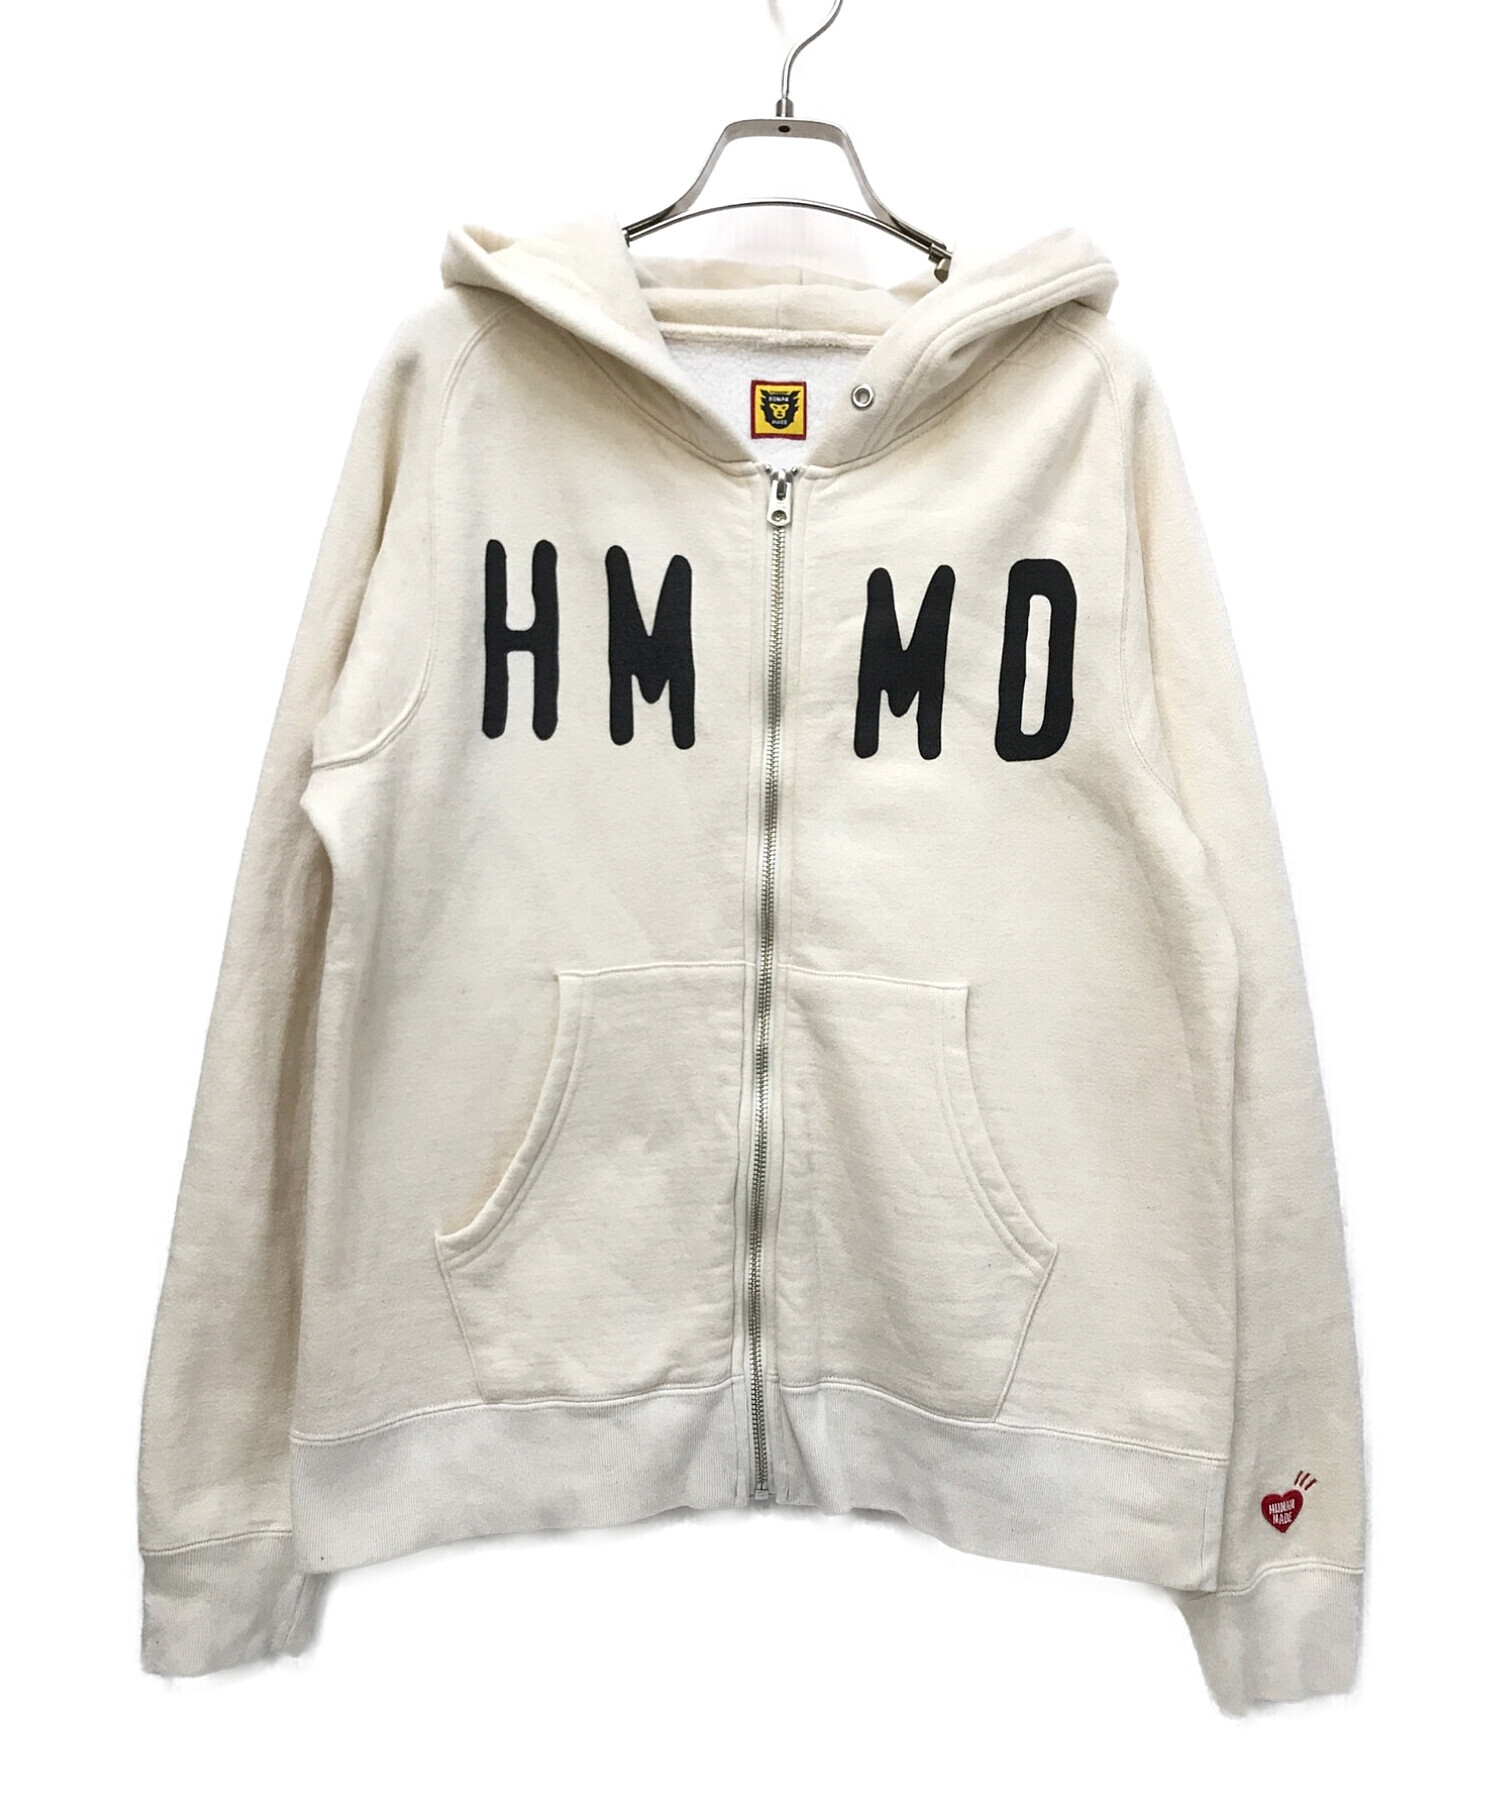 HUMAN MADE (ヒューマンメイド) HMMD Hooded Sweatshirt アイボリー サイズ:Ｓ